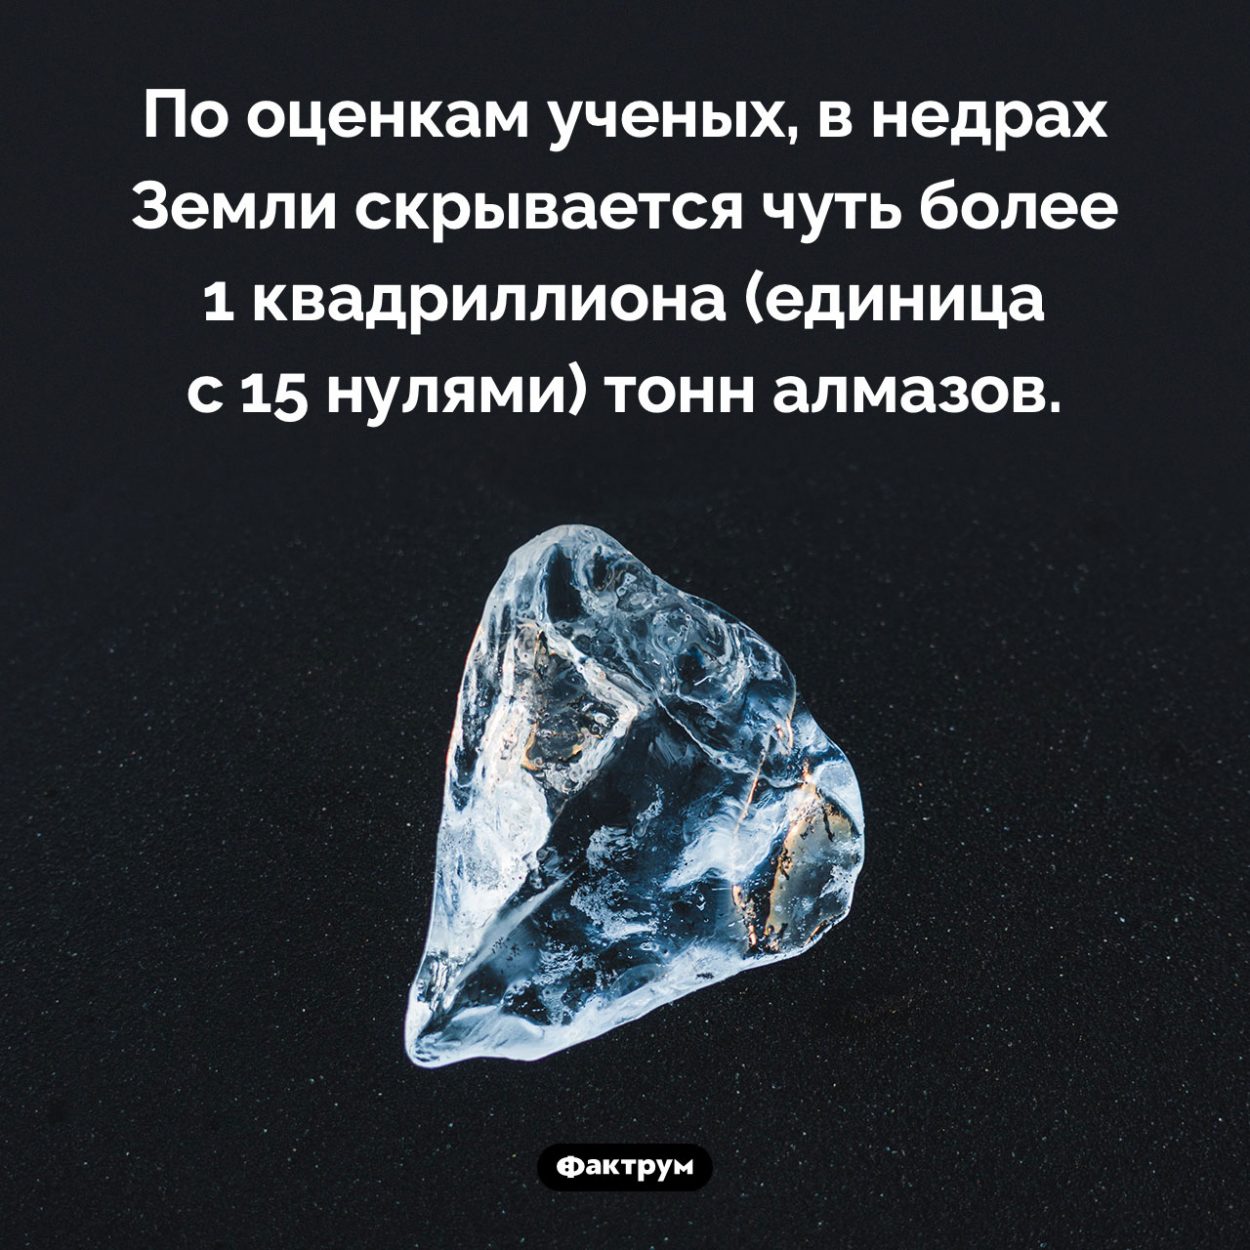 Сколько в Земле алмазов. По оценкам ученых, в недрах Земли скрывается чуть более 1 квадриллиона (единица с 15 нулями) тонн алмазов.